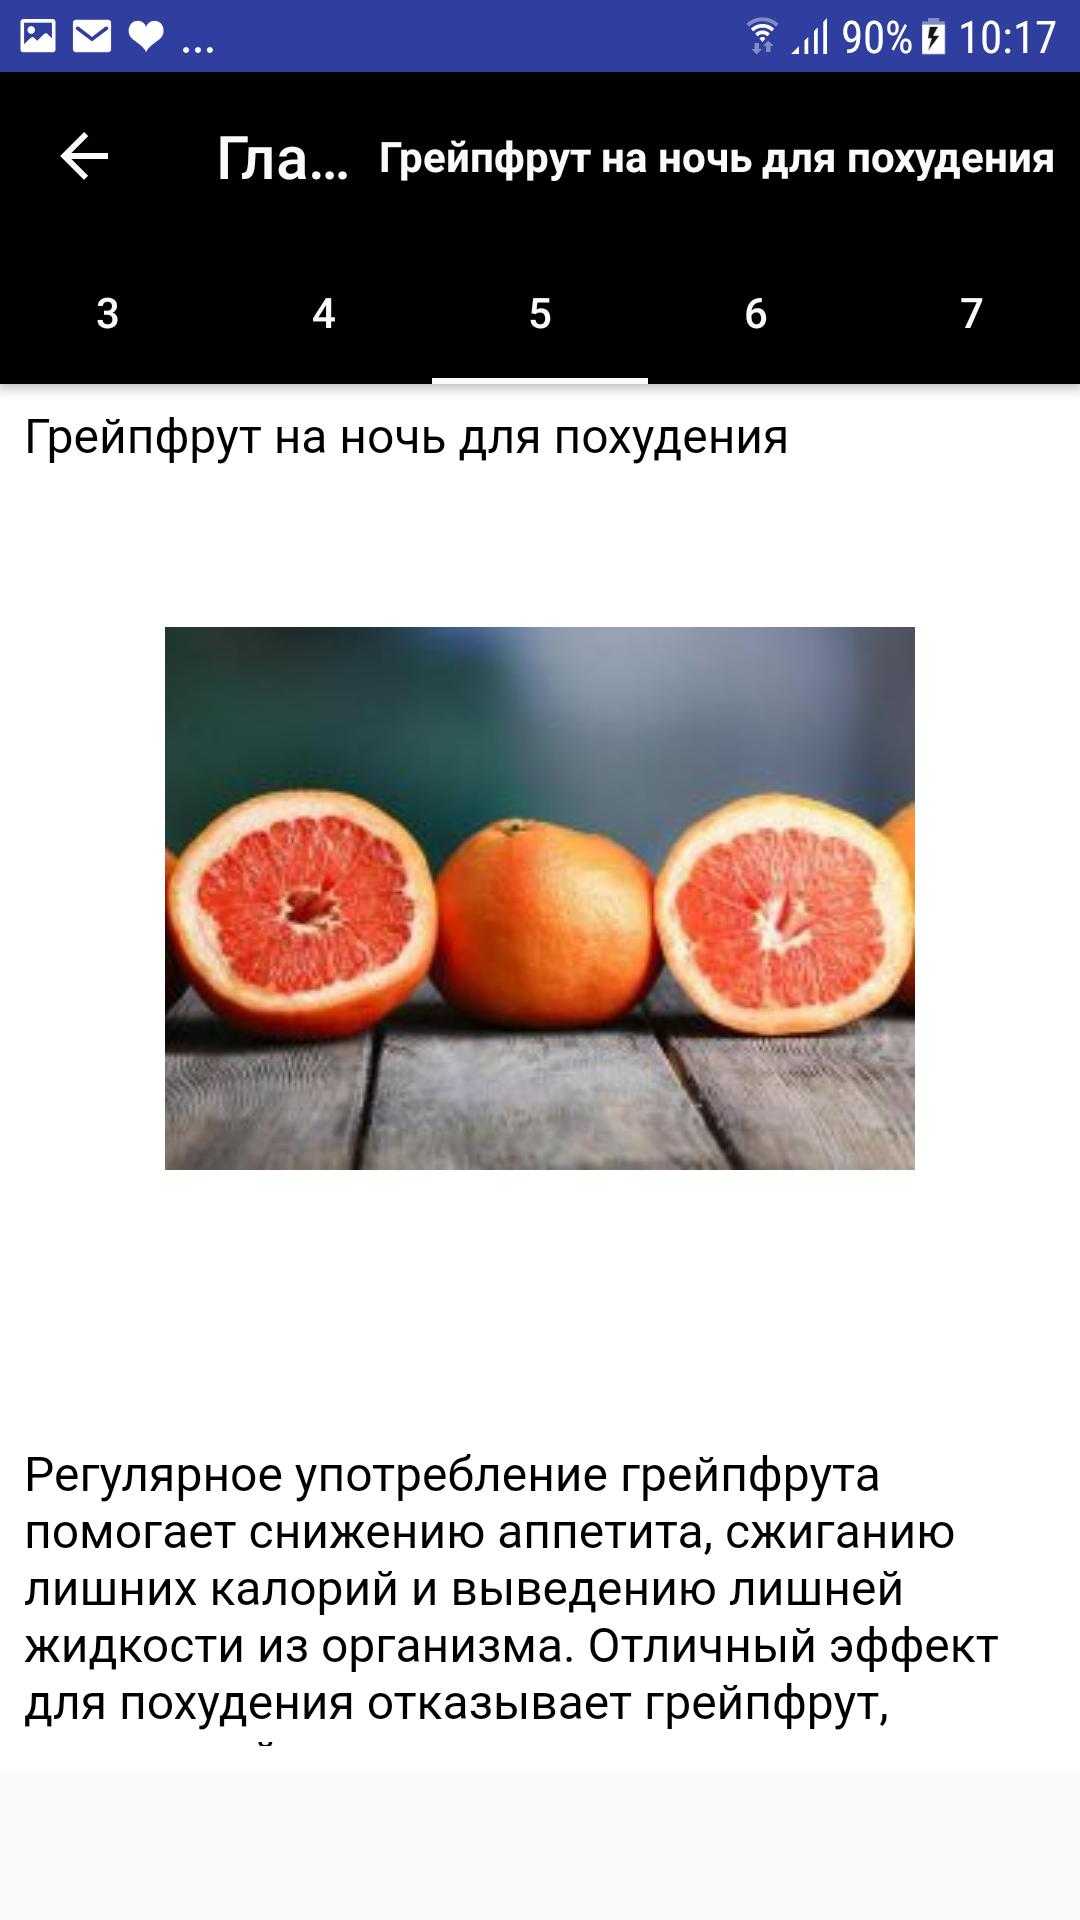 Грейпфрут для похудения: как действует, польза и противопоказания, отзывы диетологов и рецепты из грейпфрута